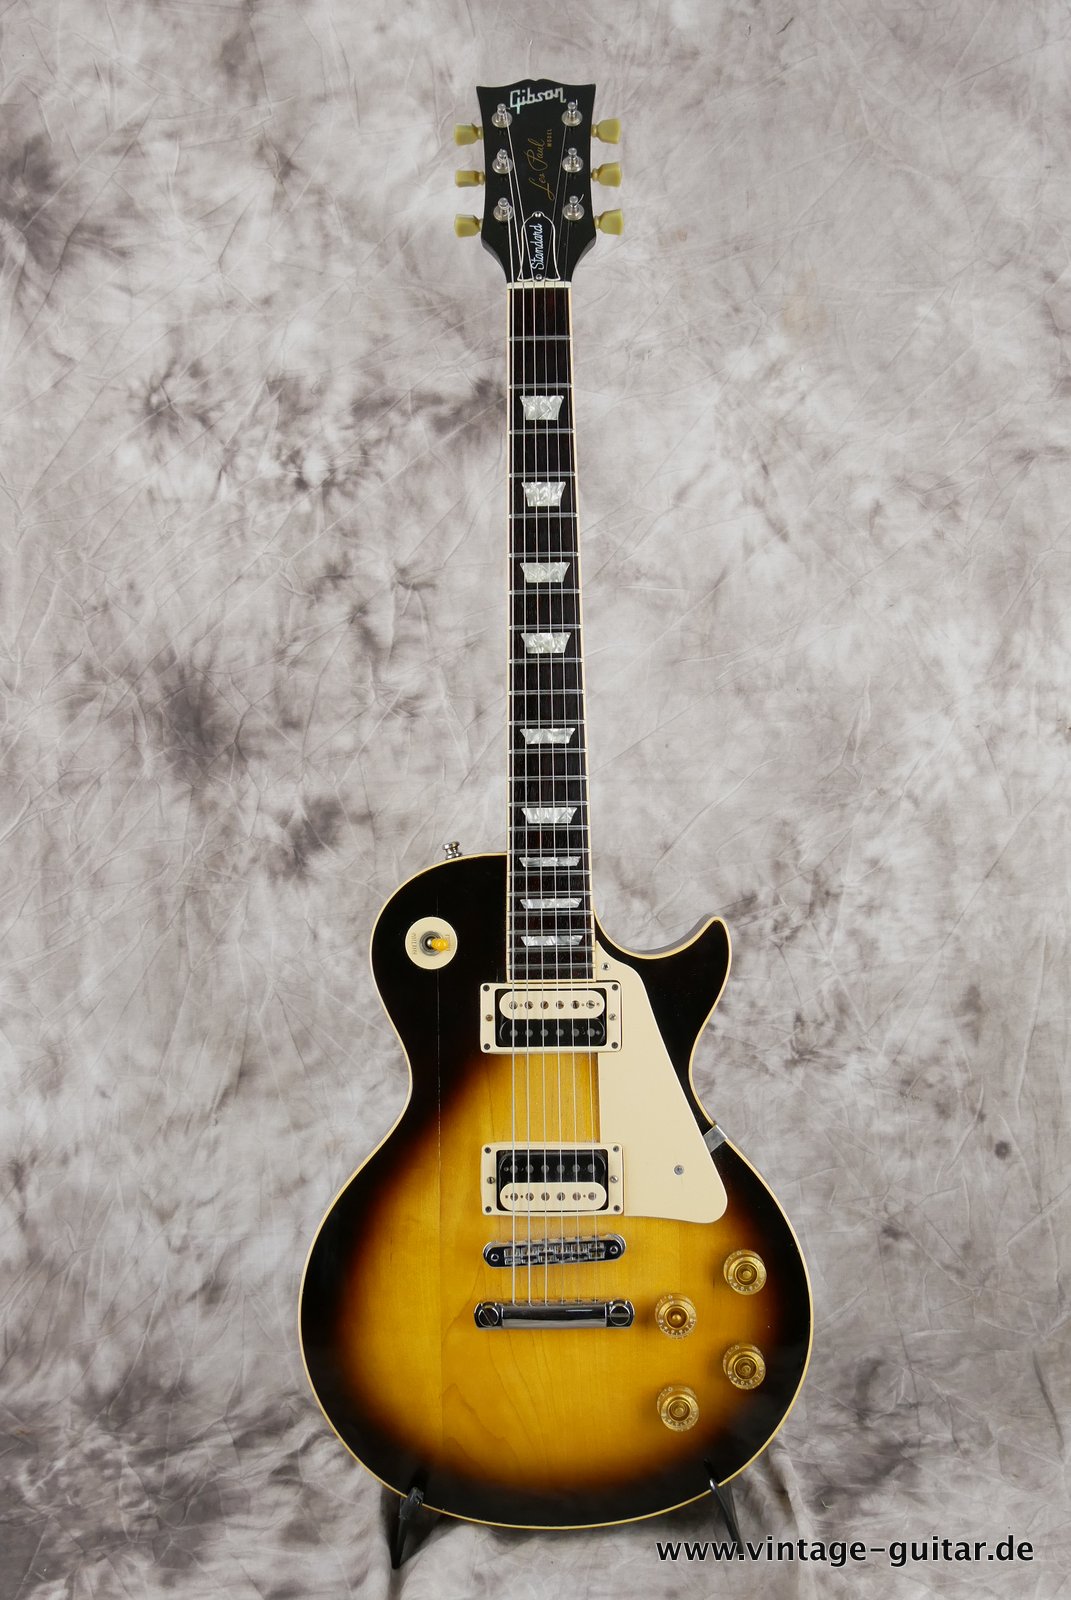 Gibson-Les-Paul-Standard-1981-tobacco-sunburst-001.JPG